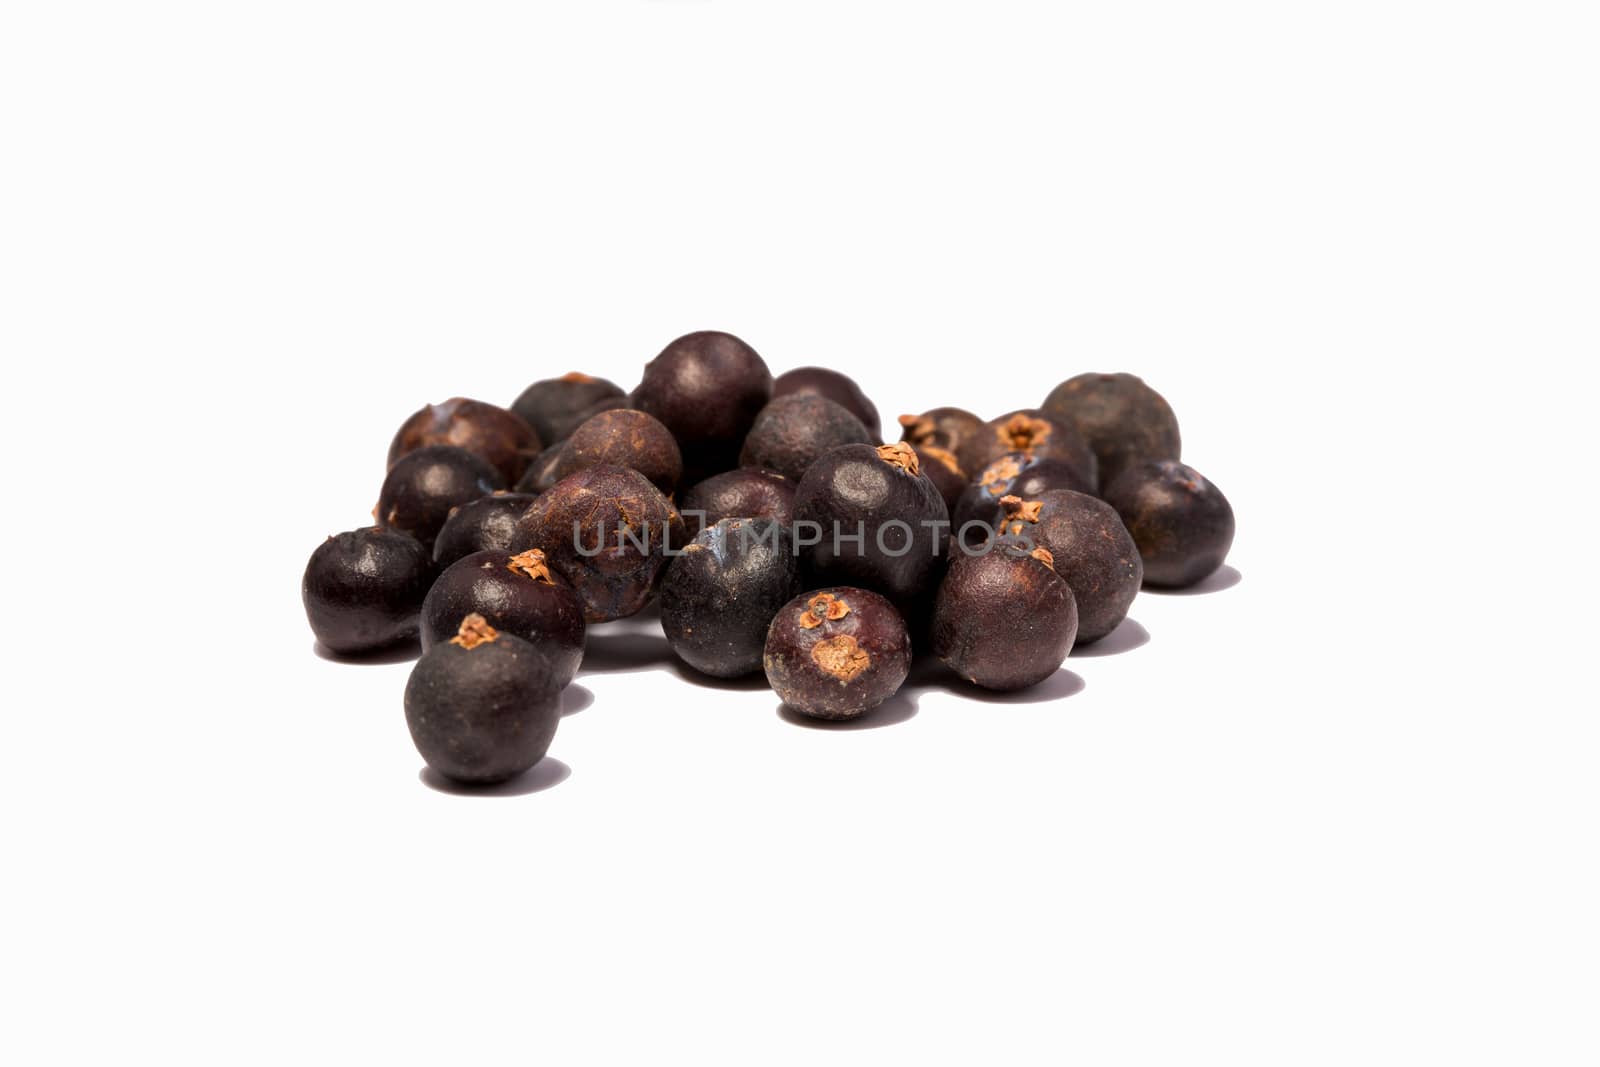 Black pepper grains on white background